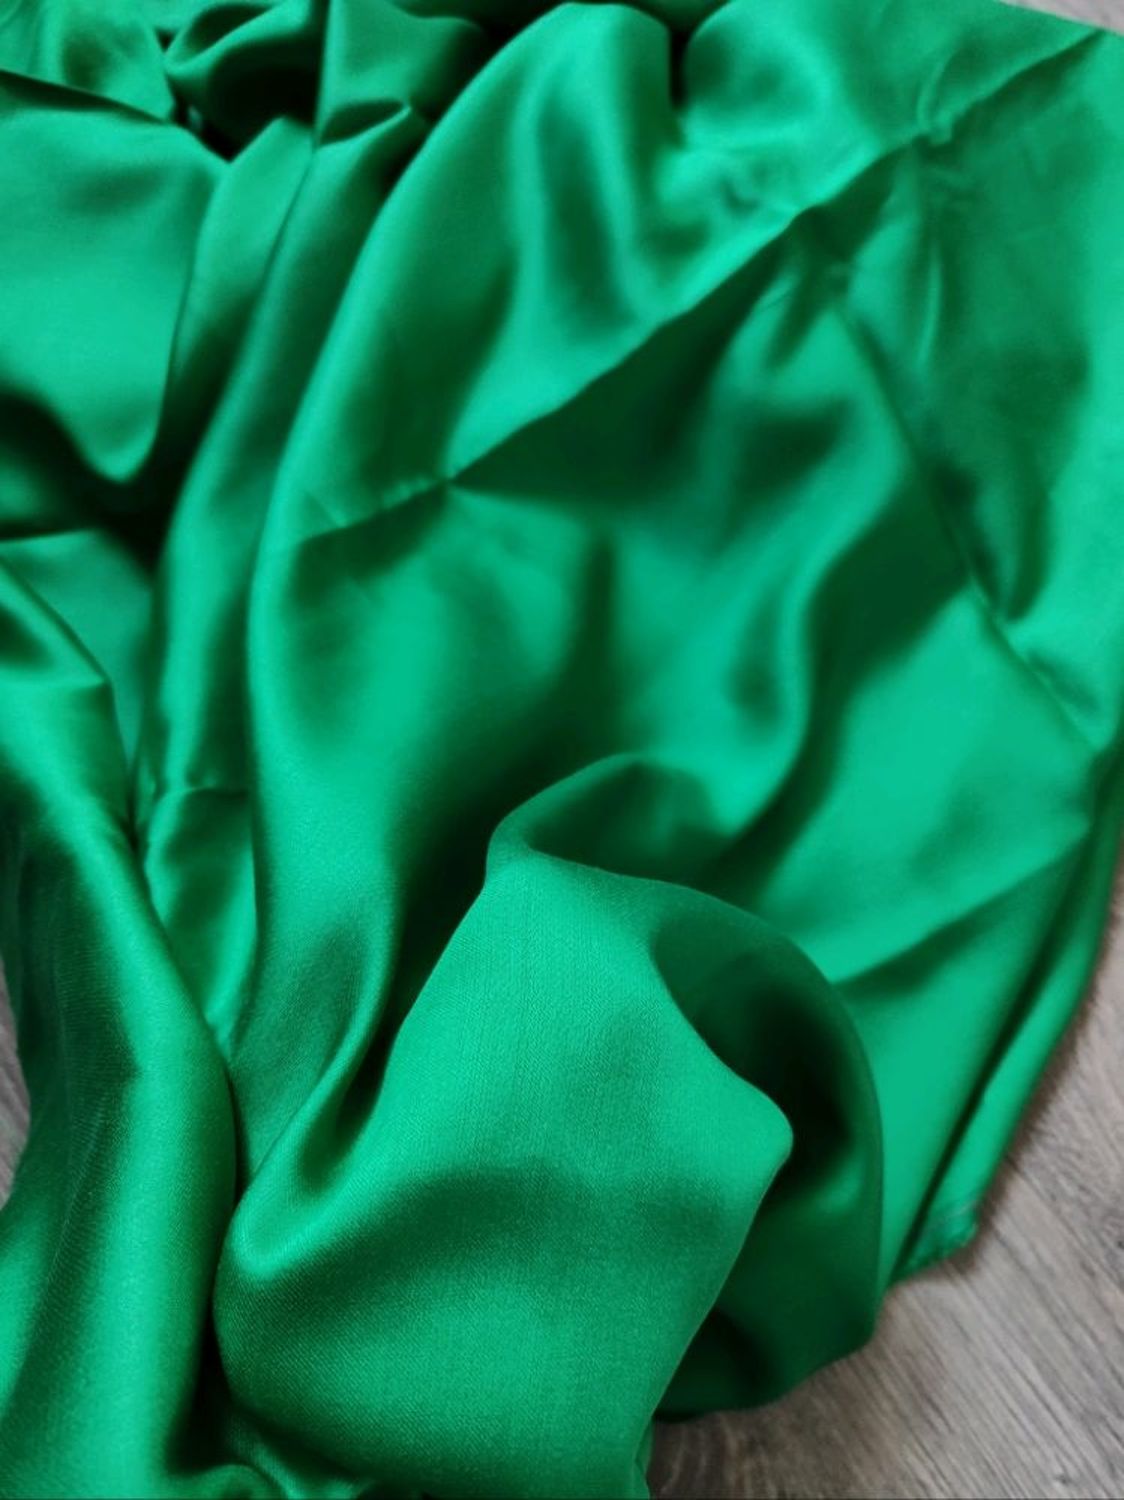 Photo №2 к отзыву покупателя Nad@ о товаре Ткани: Атласная вискоза Max Mara зеленый